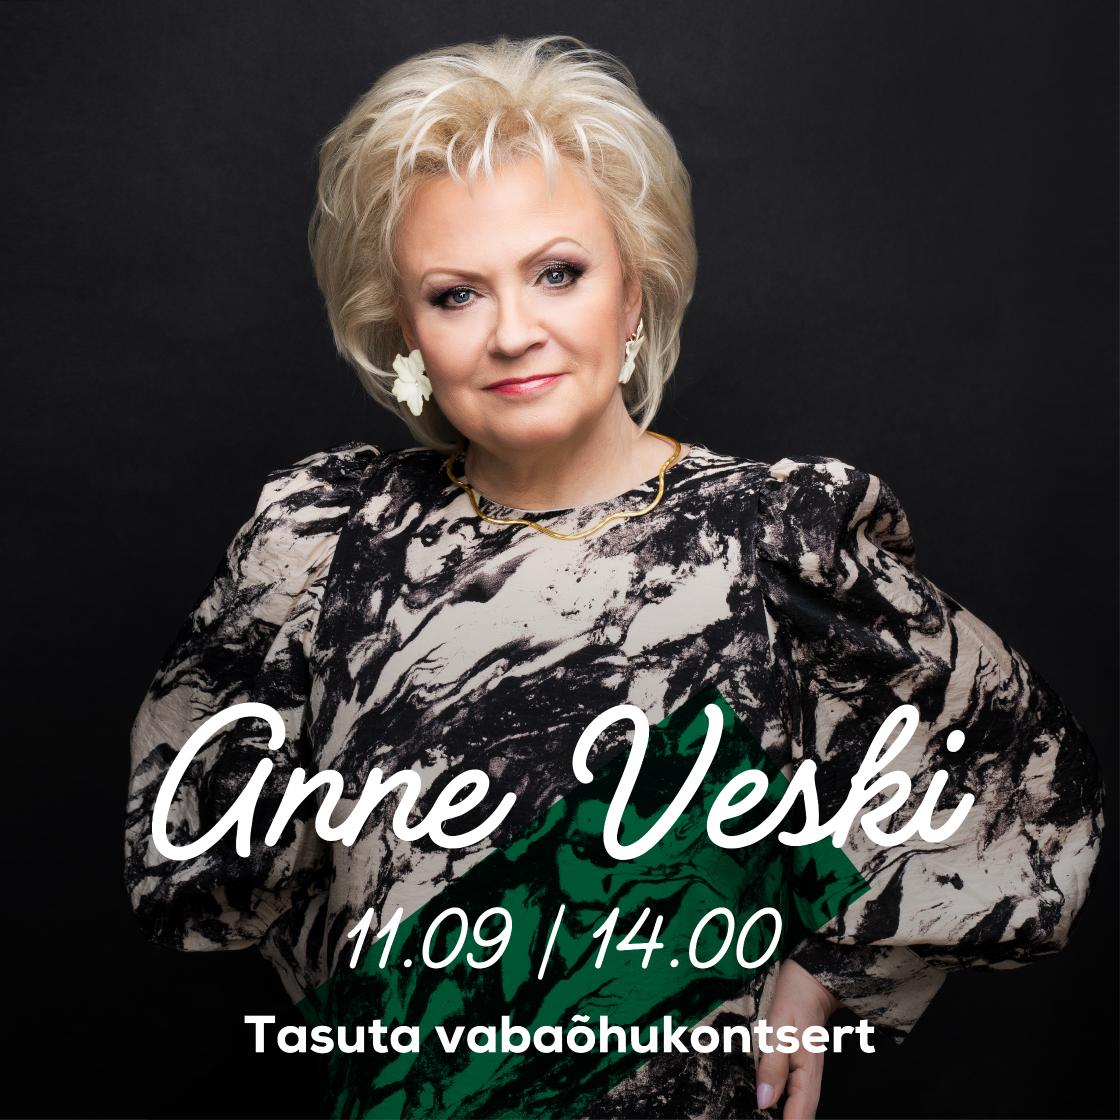 Anne Veski tasuta vabaõhukontsert